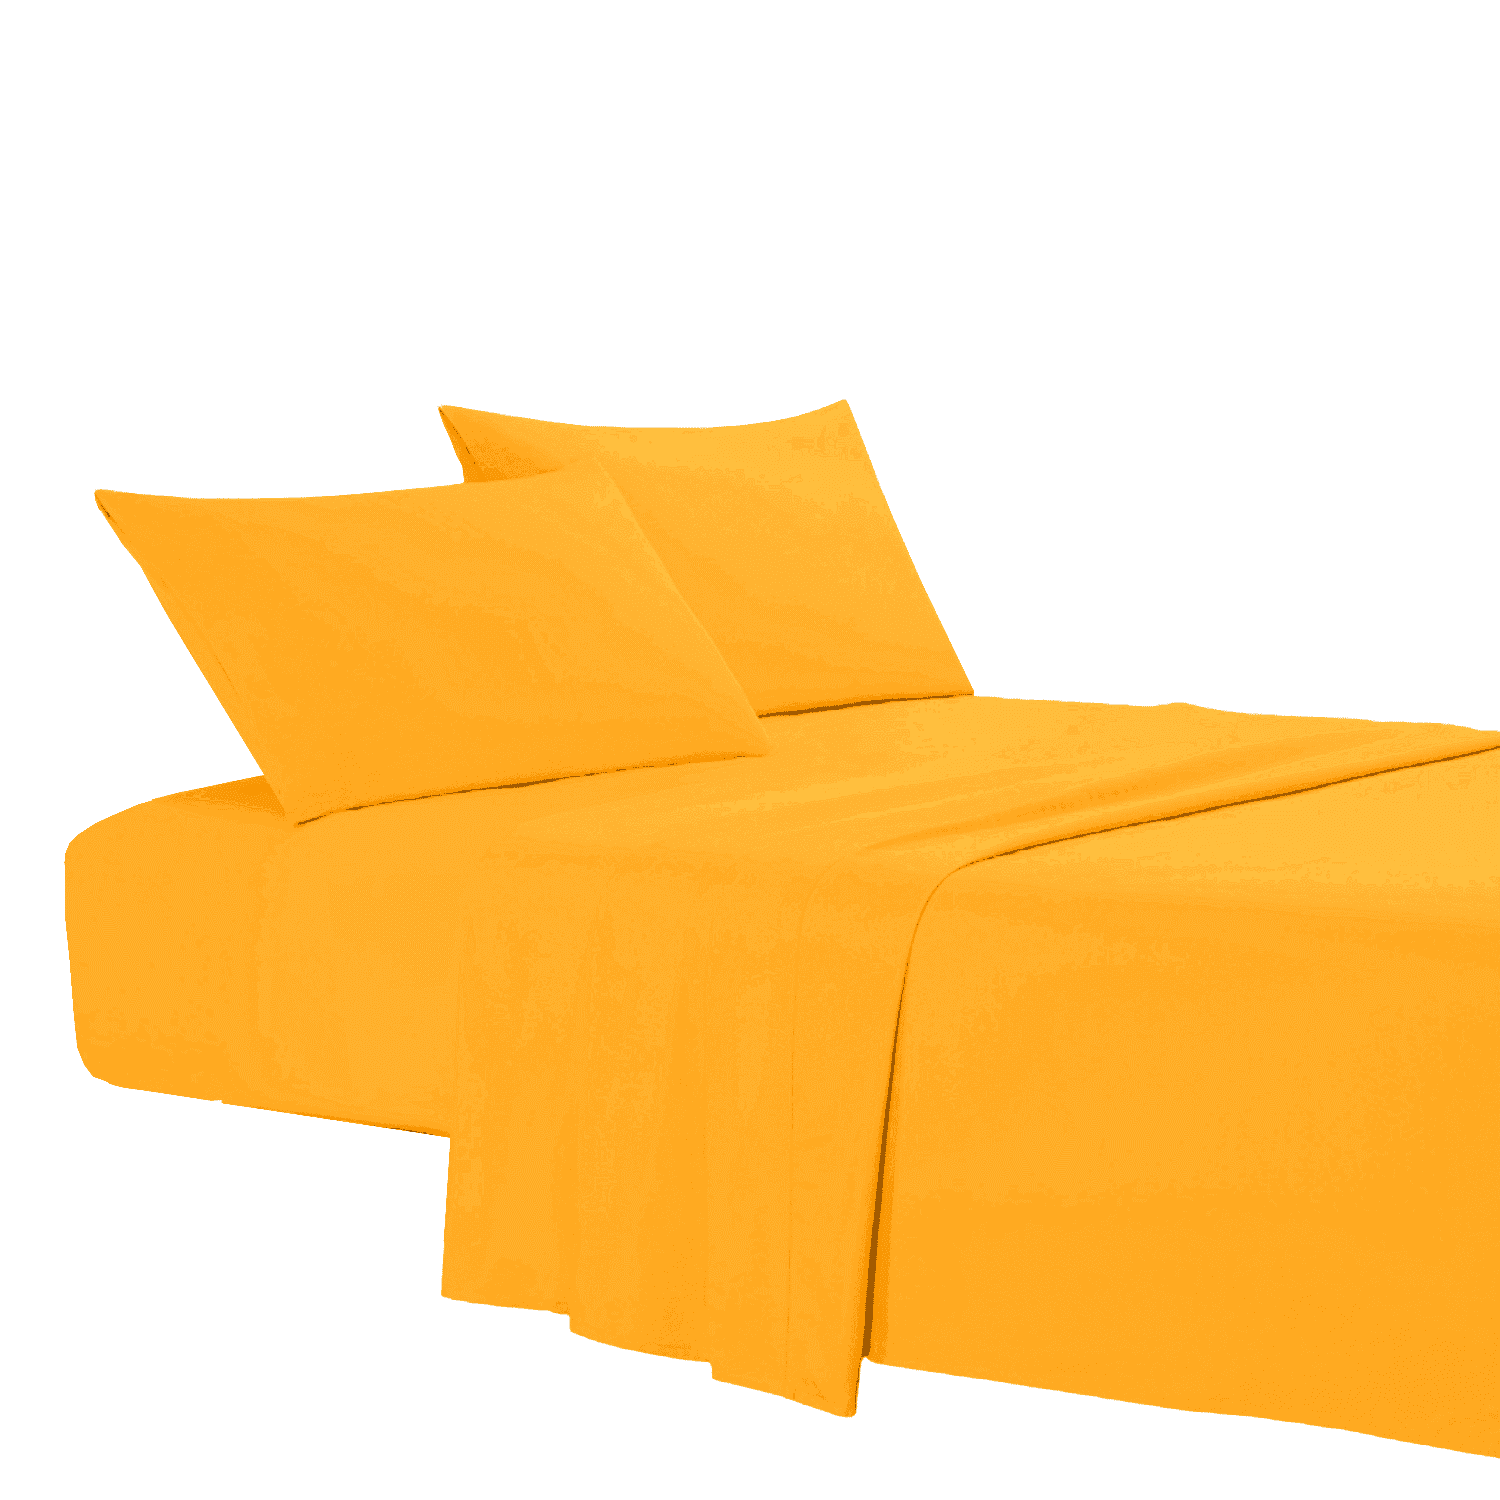 arancio-coloratissimi-completo-lenzuola-puro-cotone-tinta-unita-arancione-fold-letto